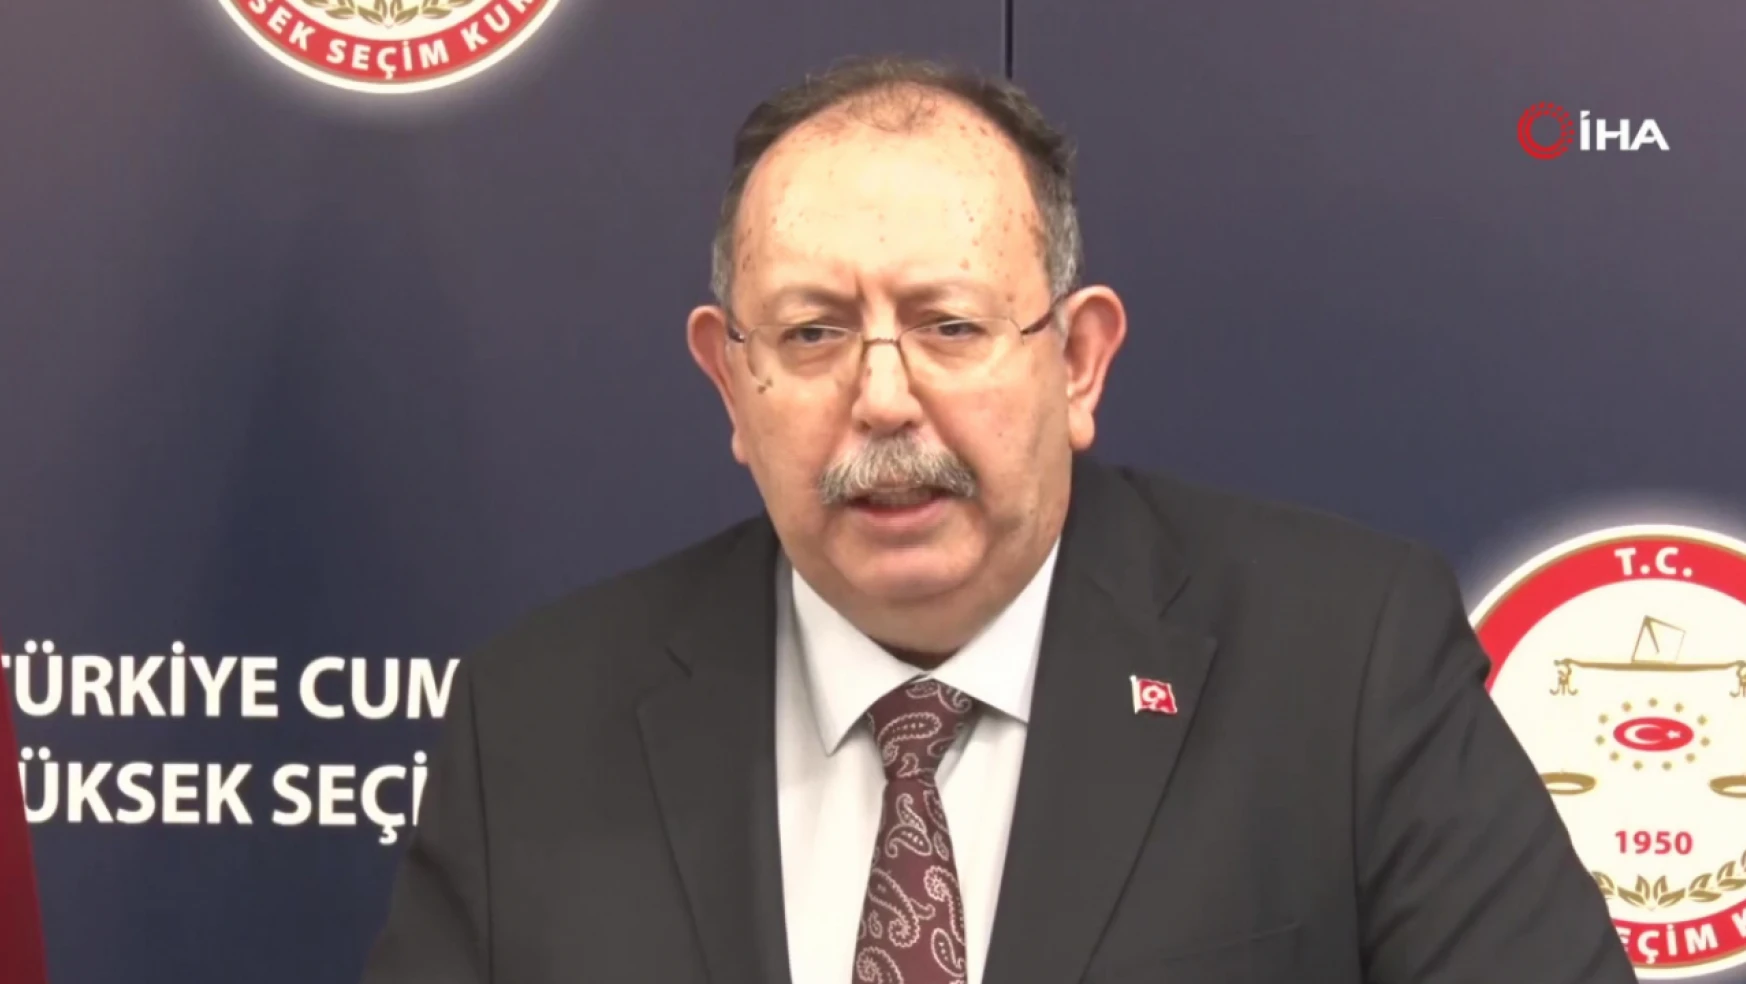 YSK Başkanı Yener: 'Şu an itibariyle Erdoğan yüzde 54.47, Kılıçdaroğlu yüzde 45.53 oy oranına sahiptir'